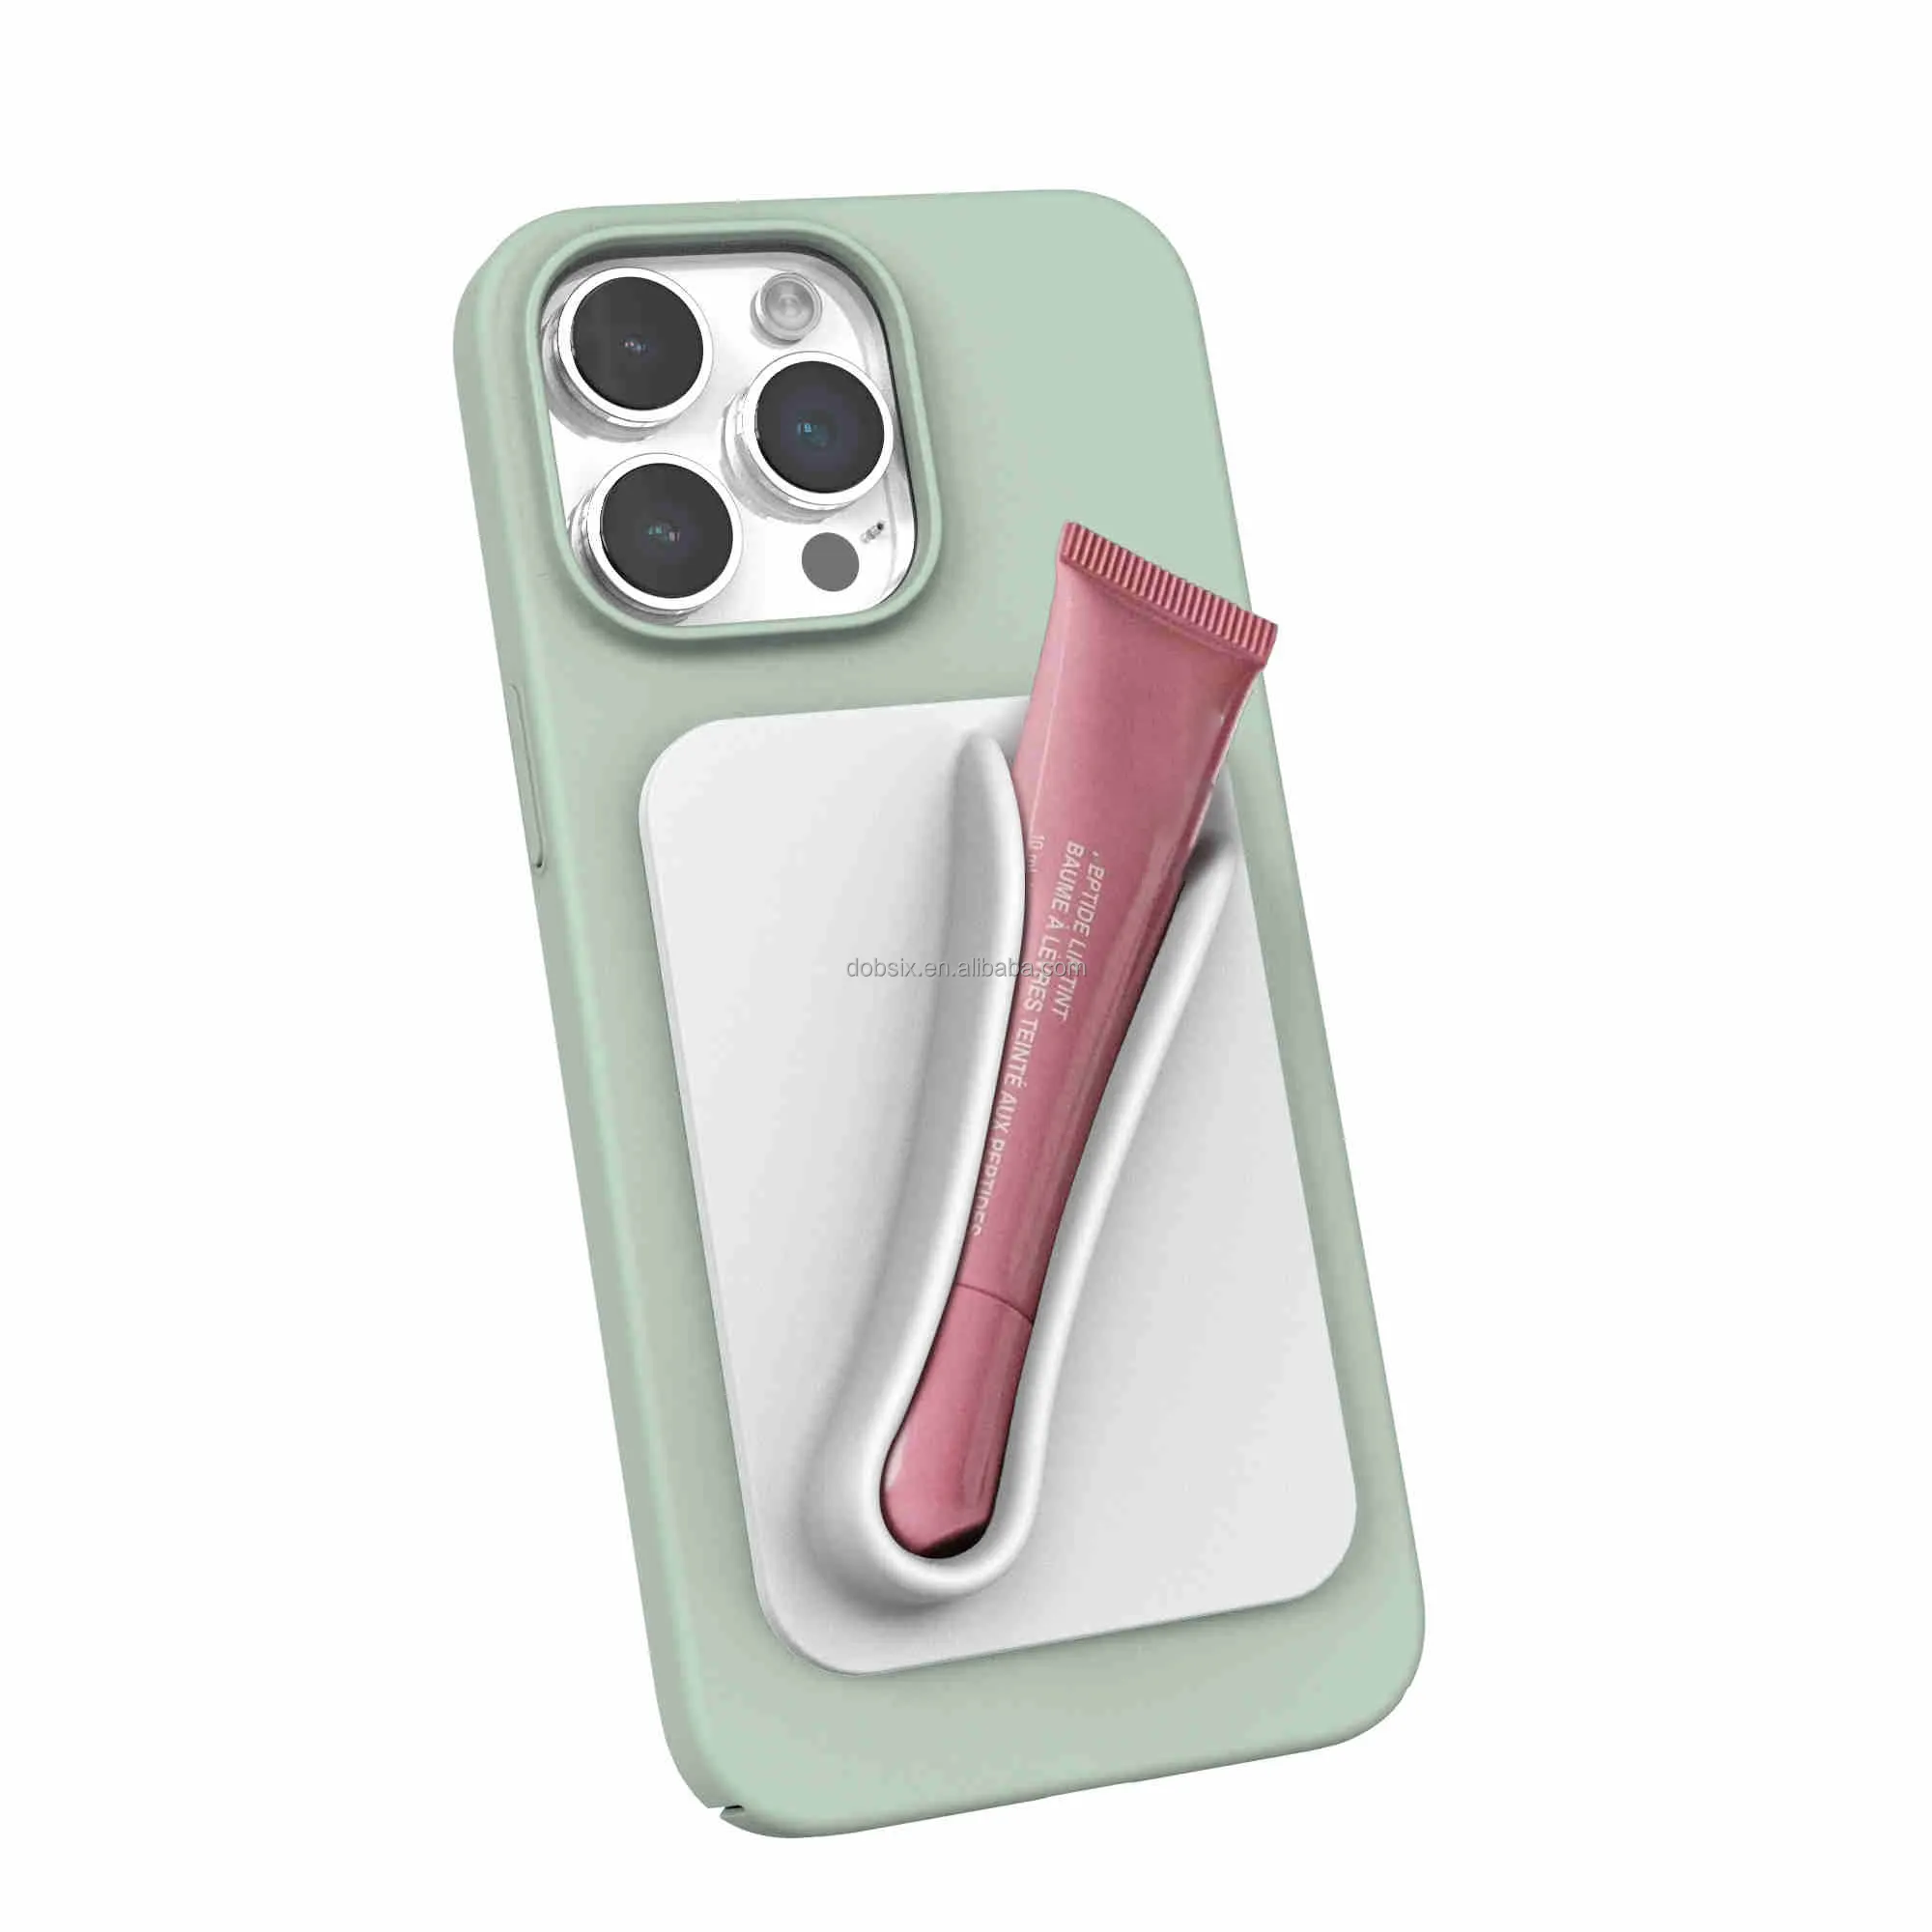 Ben telefon kılıfı için yeni özel Logo yapıştırıcı Sticker dudak parlatıcısı telefon kılıfı iPhone için kılıf 15 dudak tonu balsamı ruj telefon kılıfı Sticker